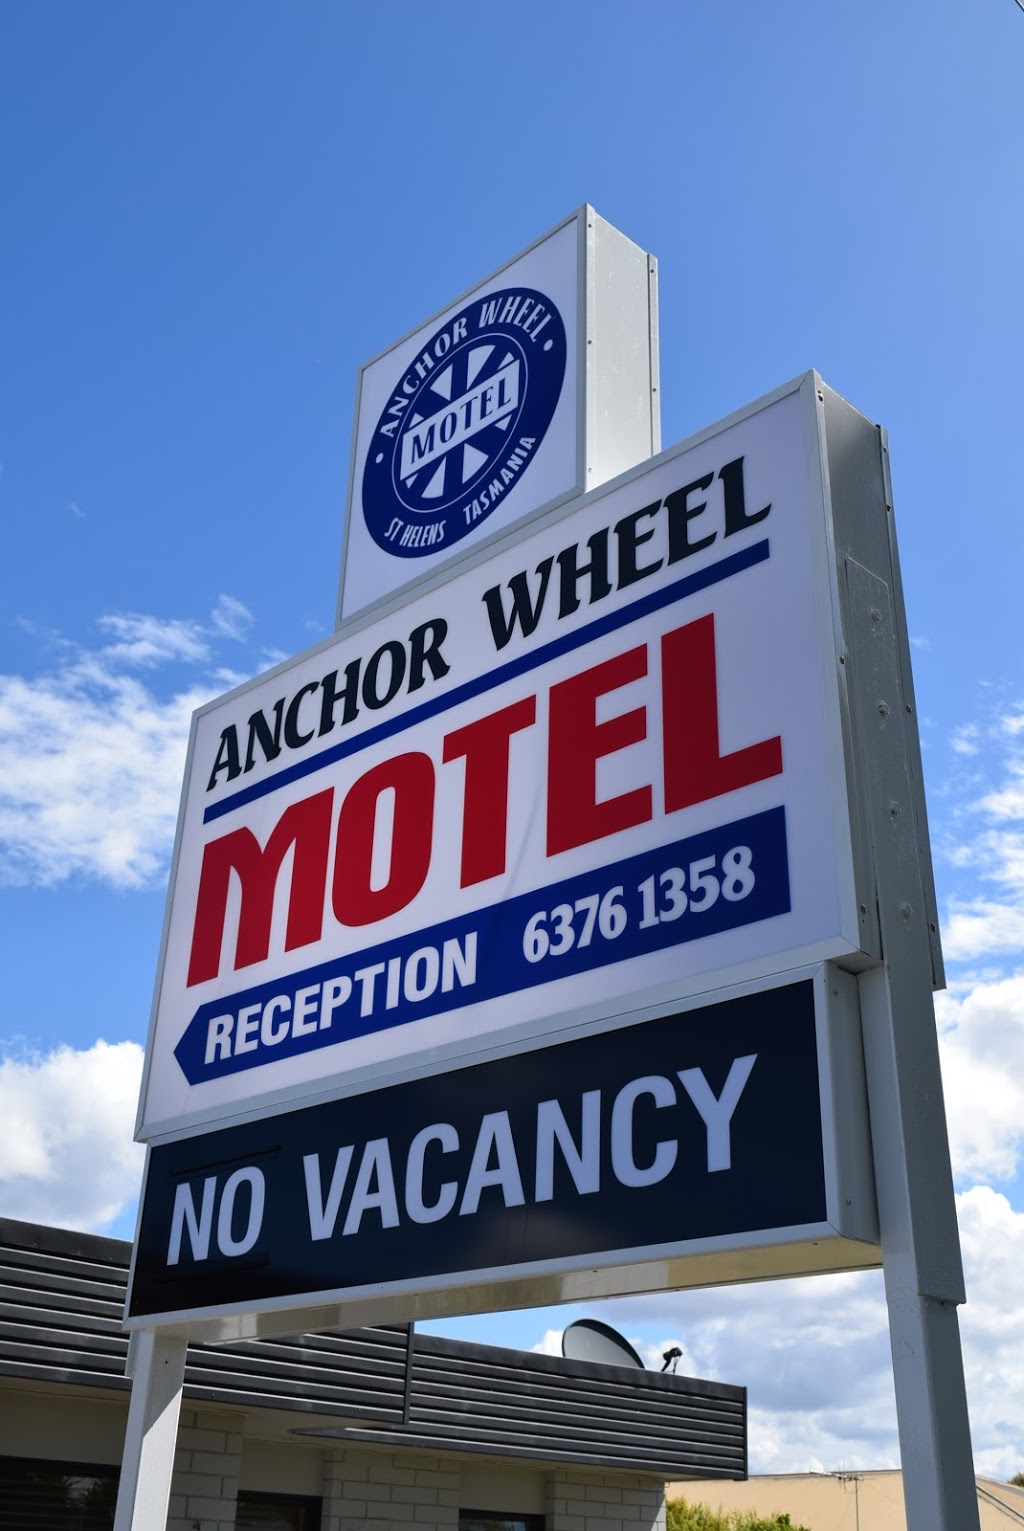 Anchor Wheel Motel | 59 Tully St, St Helens TAS 7216, Australia | Phone: (03) 6376 1358